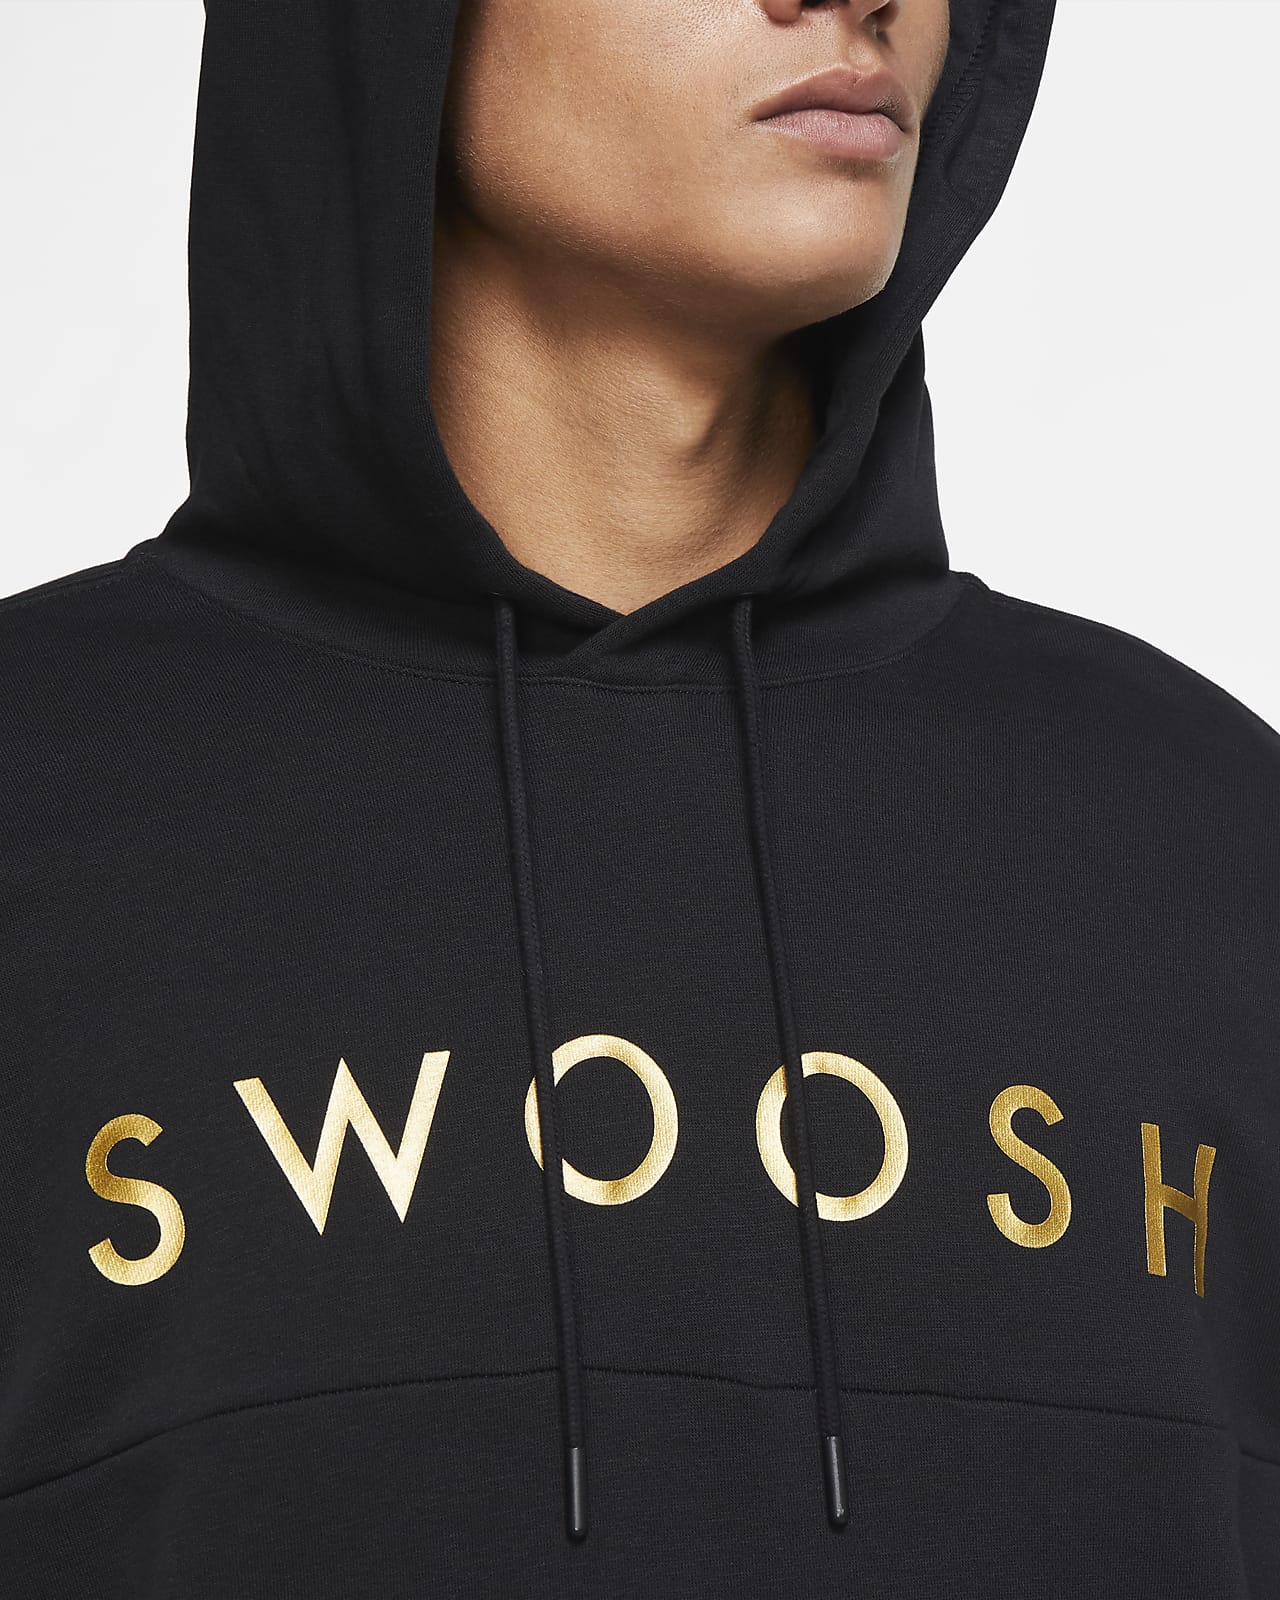 men's swoosh pullover hoodie nike sportswear